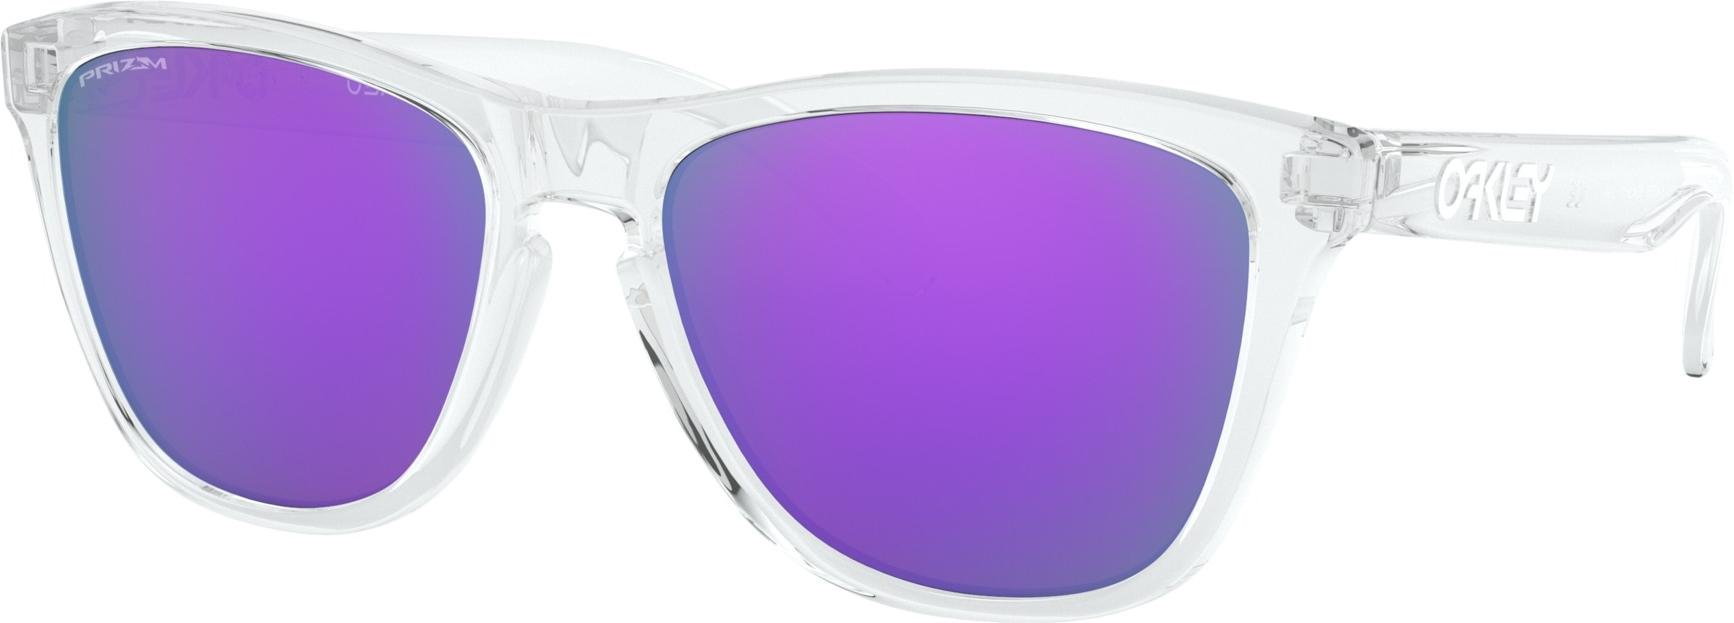 reebok crossfit sunglasses purple